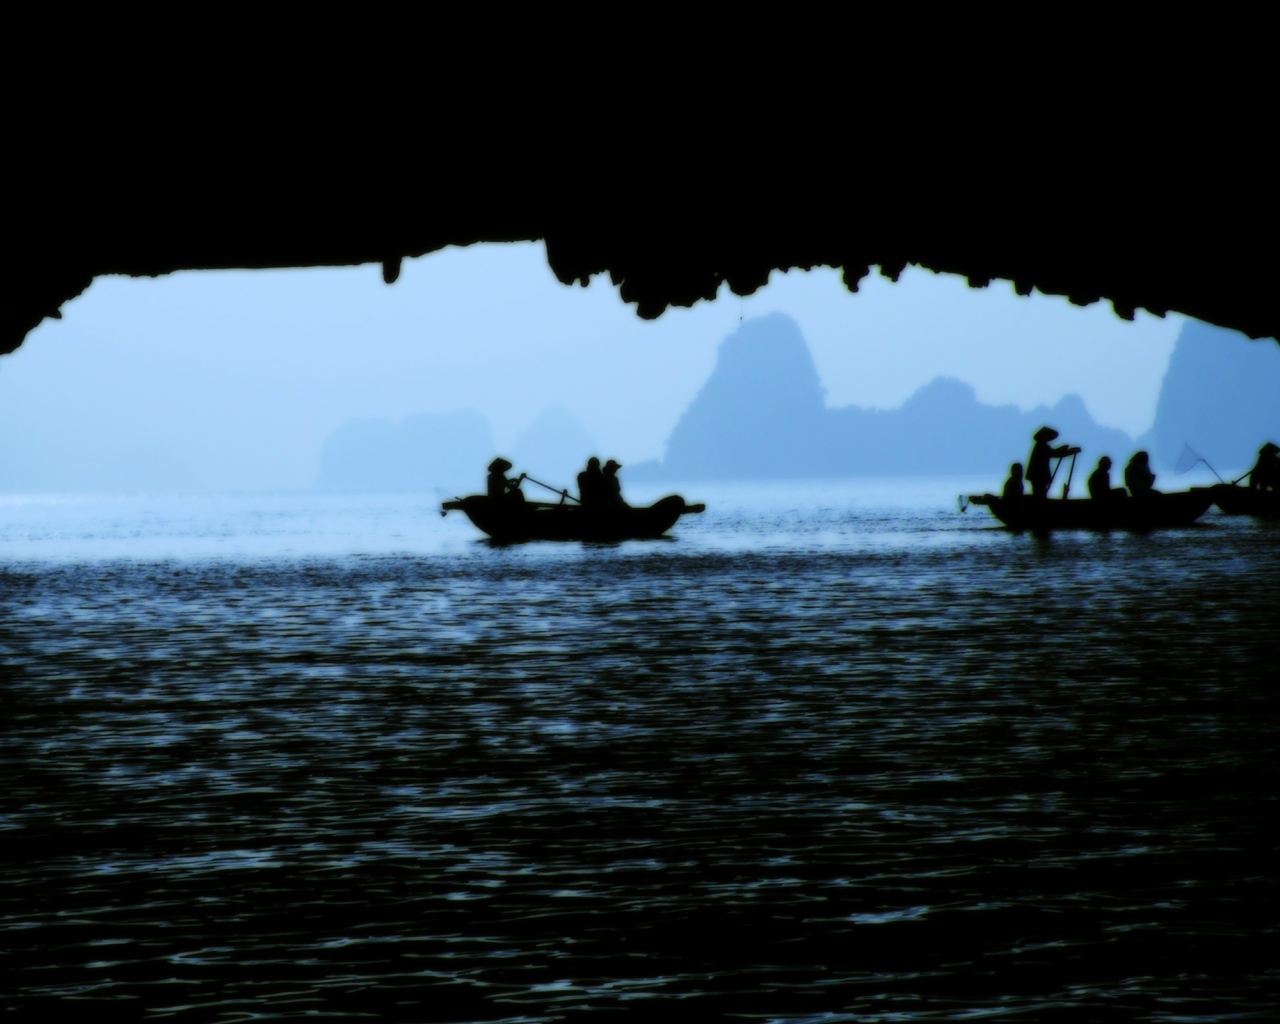 Халонг Бей Вид из пещеры